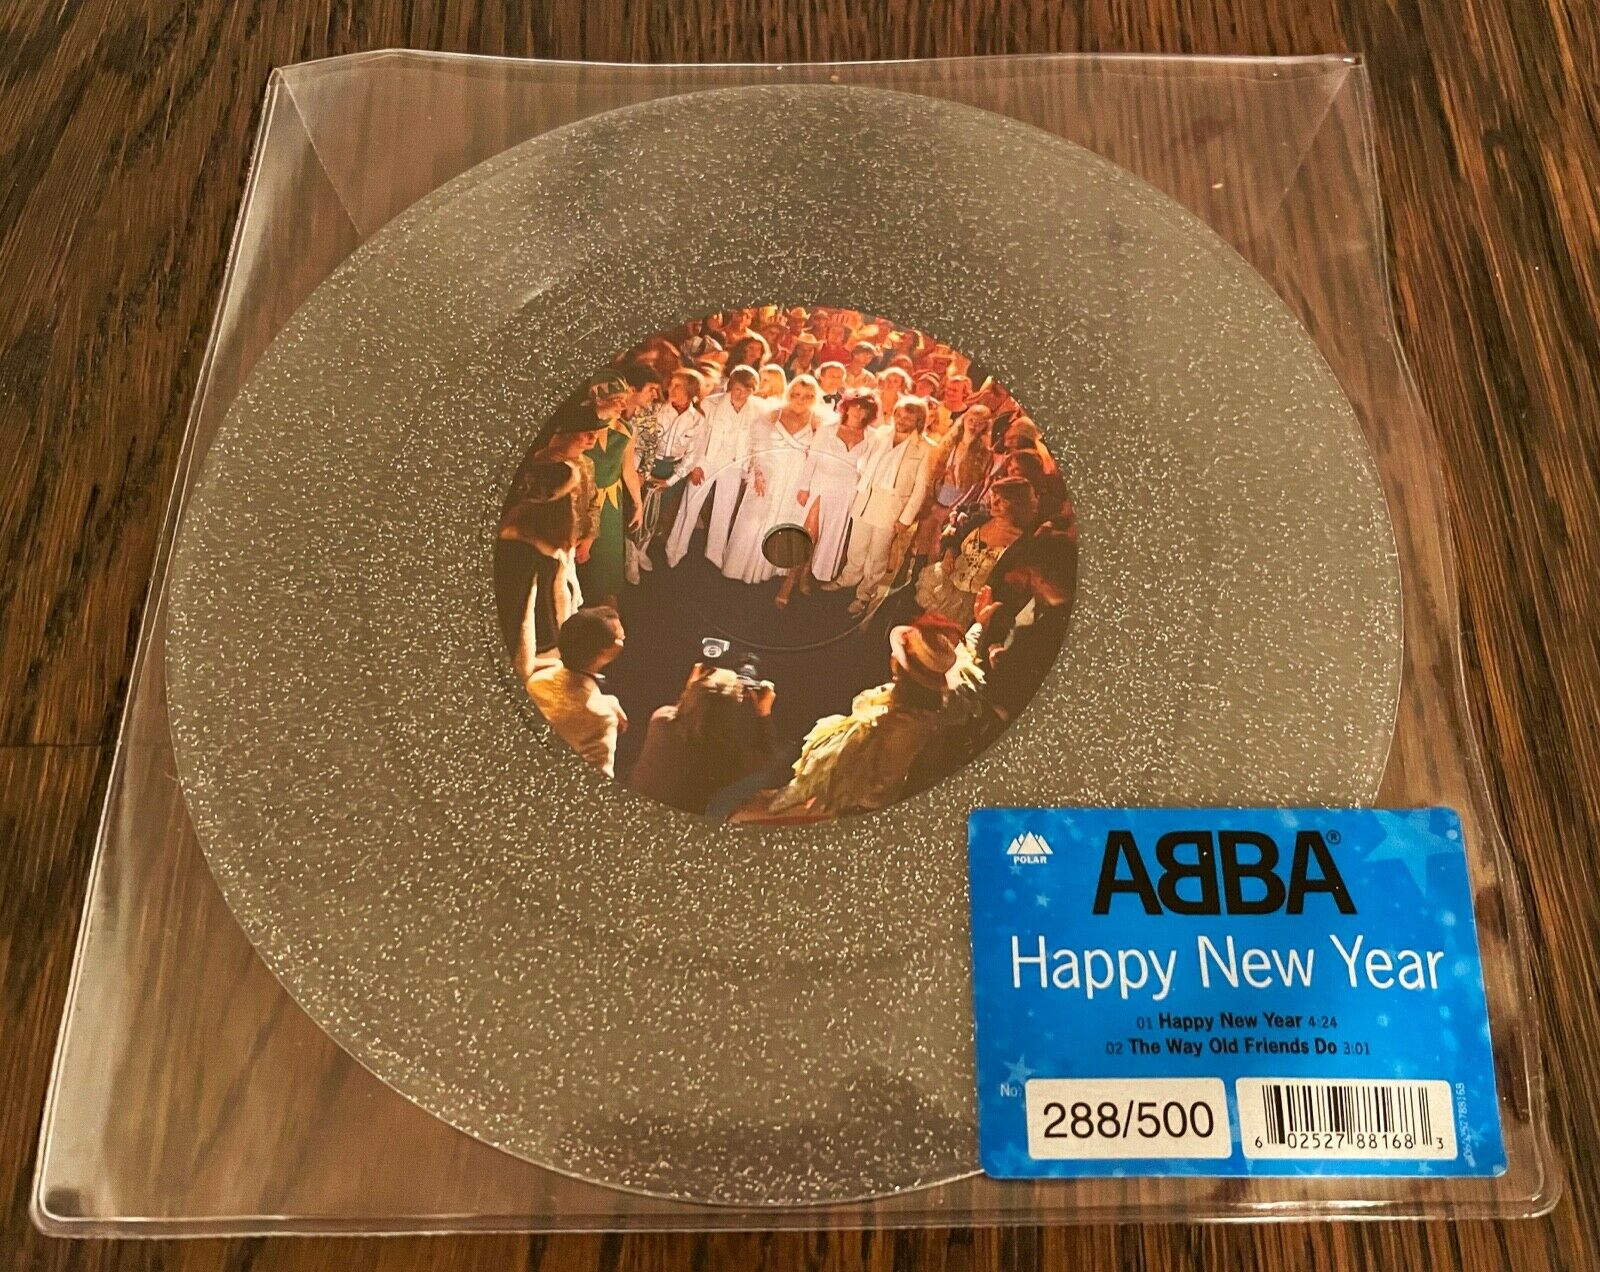 popsike.com - ABBA New - Glitter Vinyl Single - details